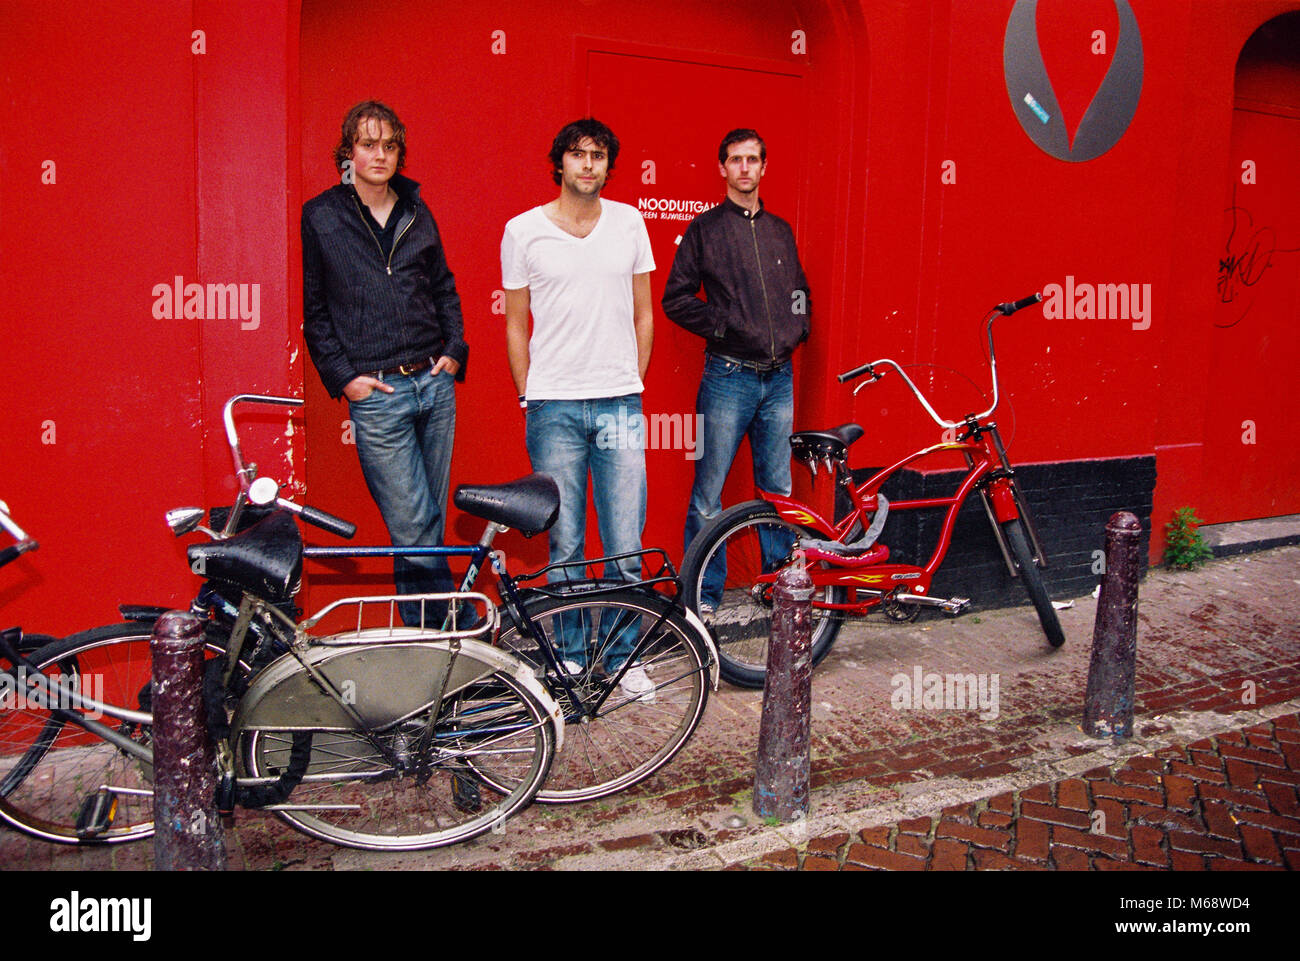 Groupe anglais Keane photographié dans Leidsekade, Amsterdam le 7 juillet 2004, aux Pays-Bas, en Europe. Banque D'Images